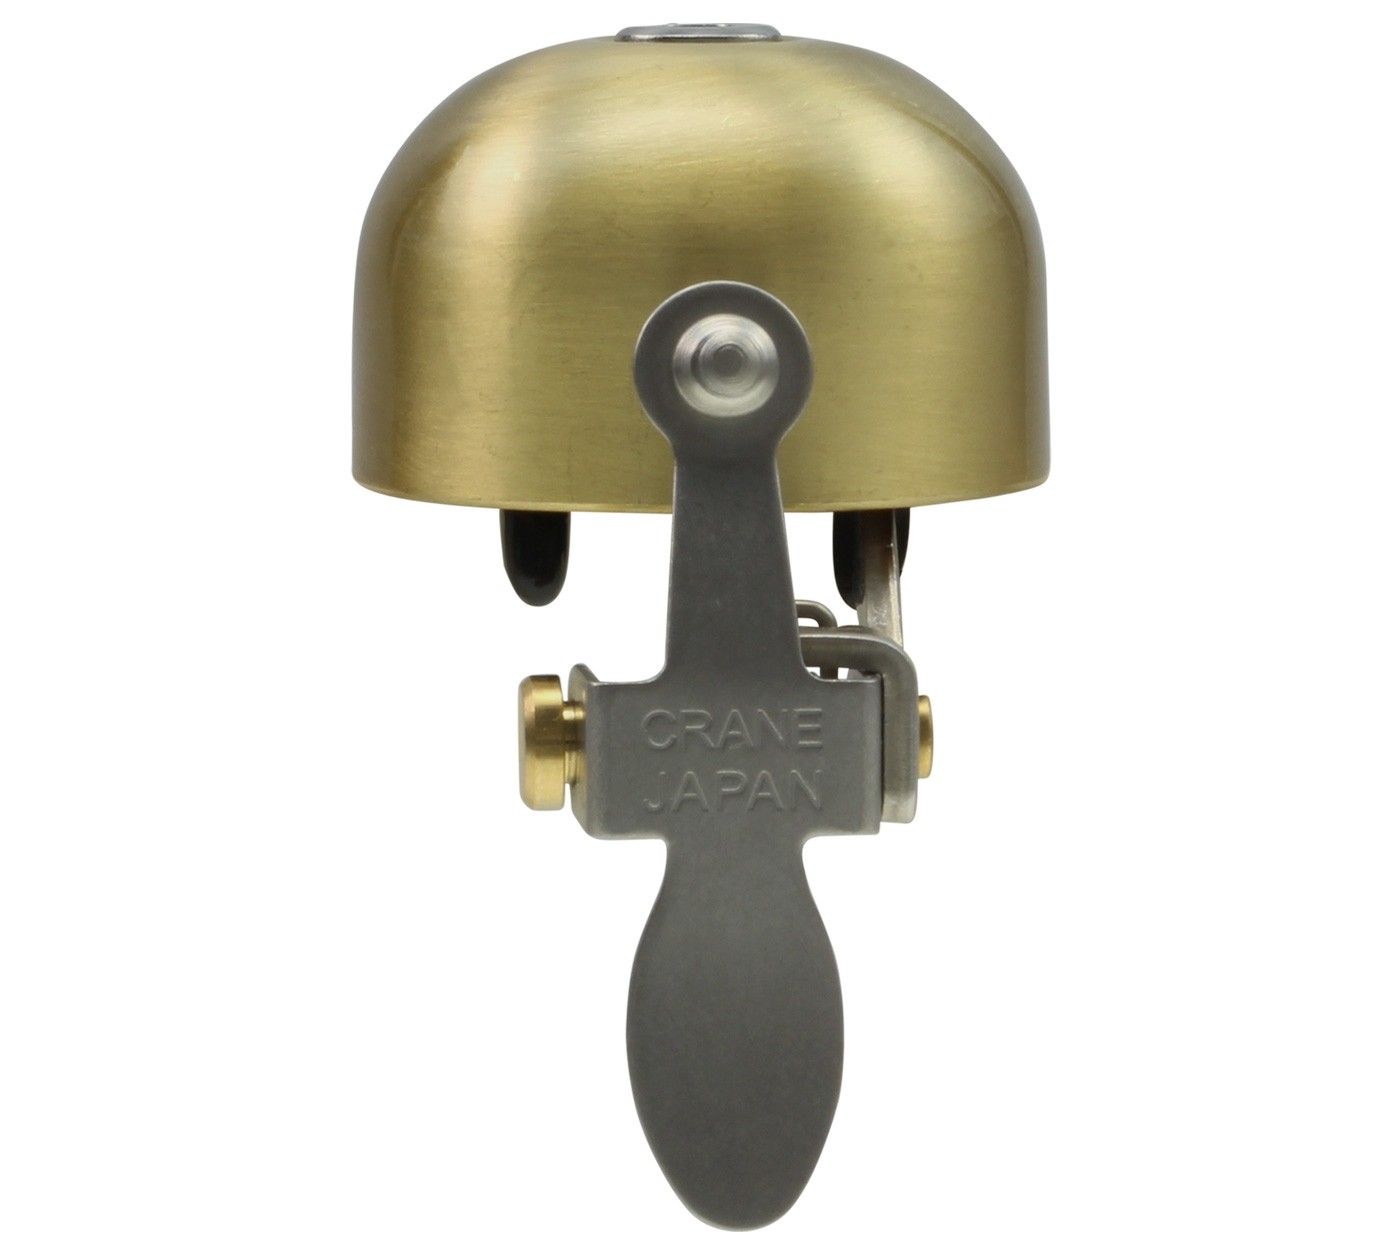 Crane Bell Co. E-NE ene Klingel Glocke Retro Design Horn Bell gold matt